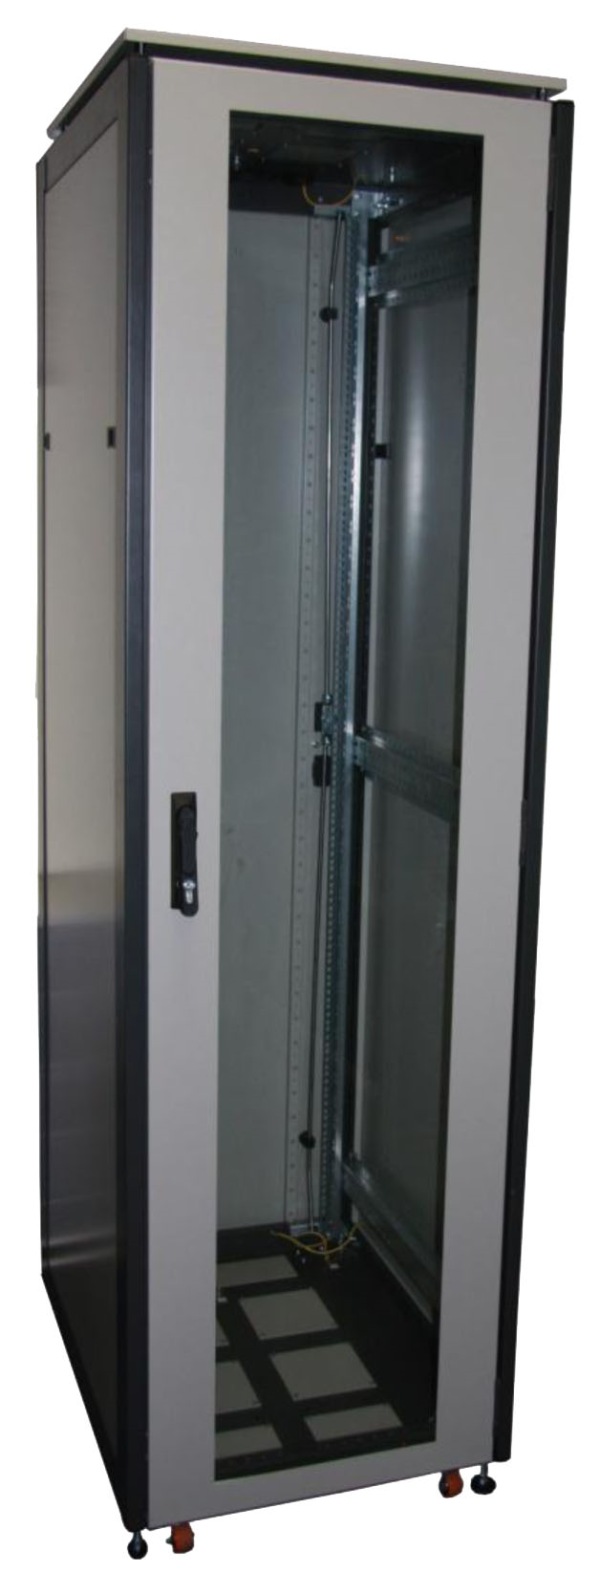 ССКТБ ТОМАСС ШТК-6818Э-01 - шкаф телекоммуникационный 19", 37U, 600х800х1800 мм, с металлической задней панелью и стеклянной дверью